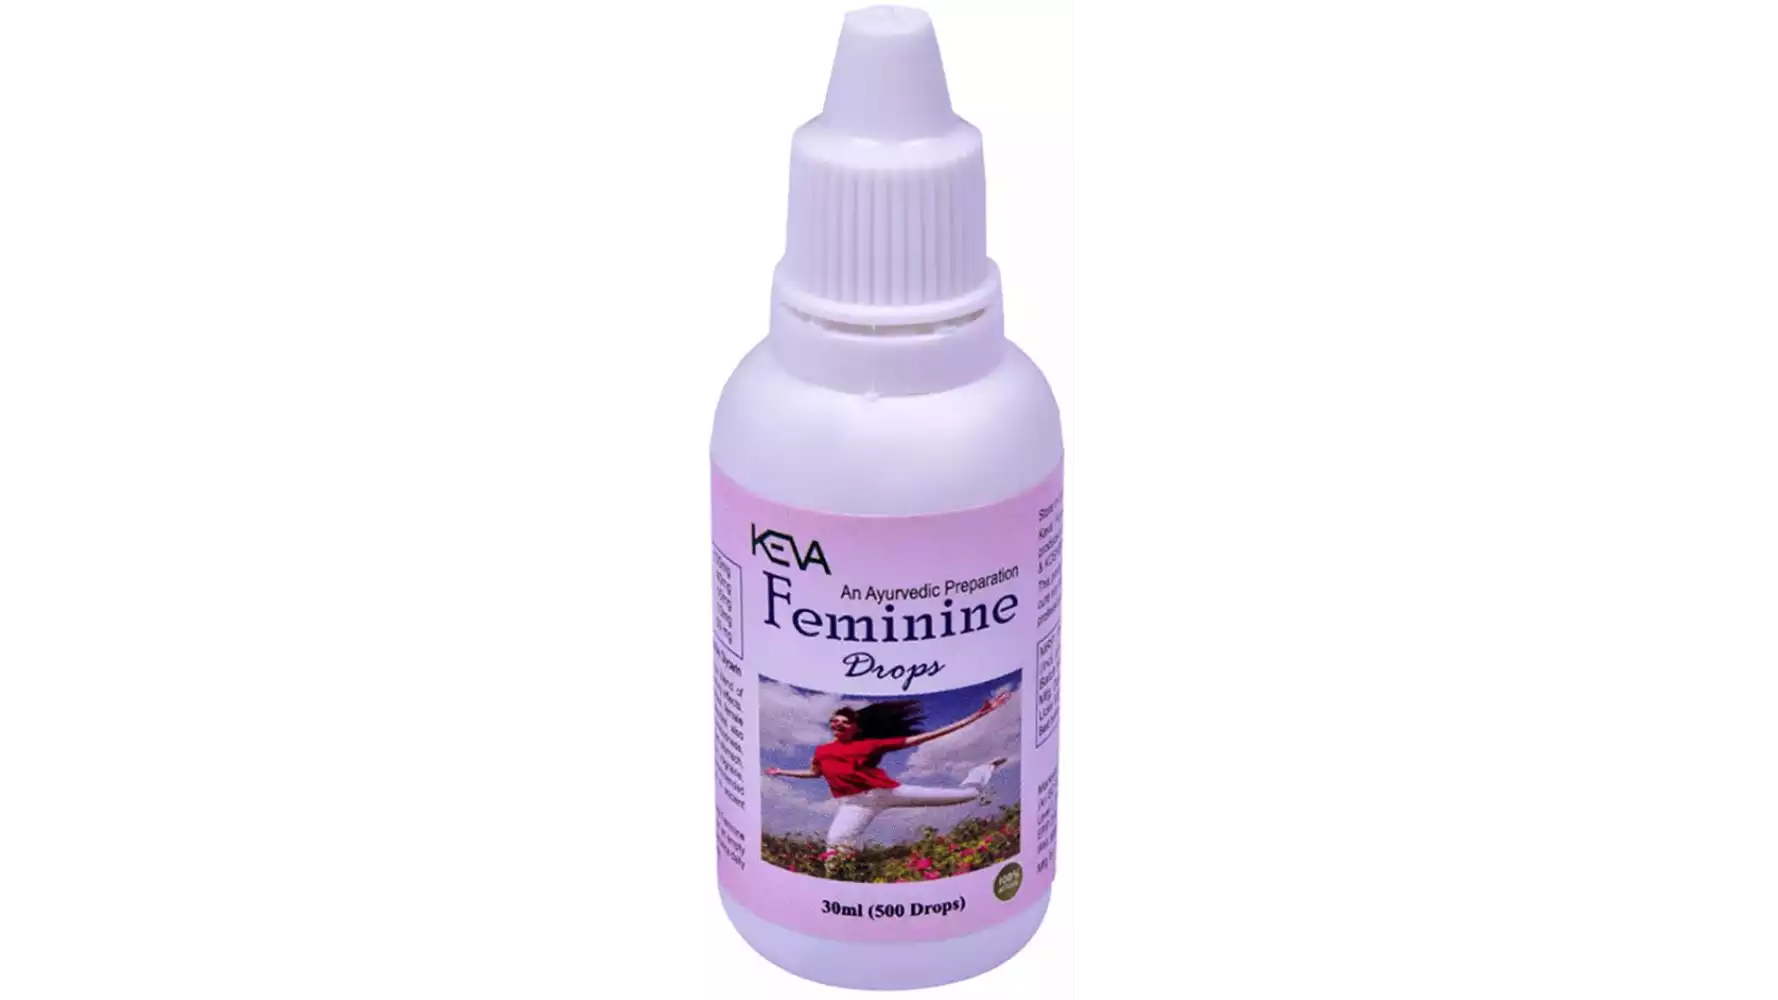 Keva Feminine Drops (30ml)